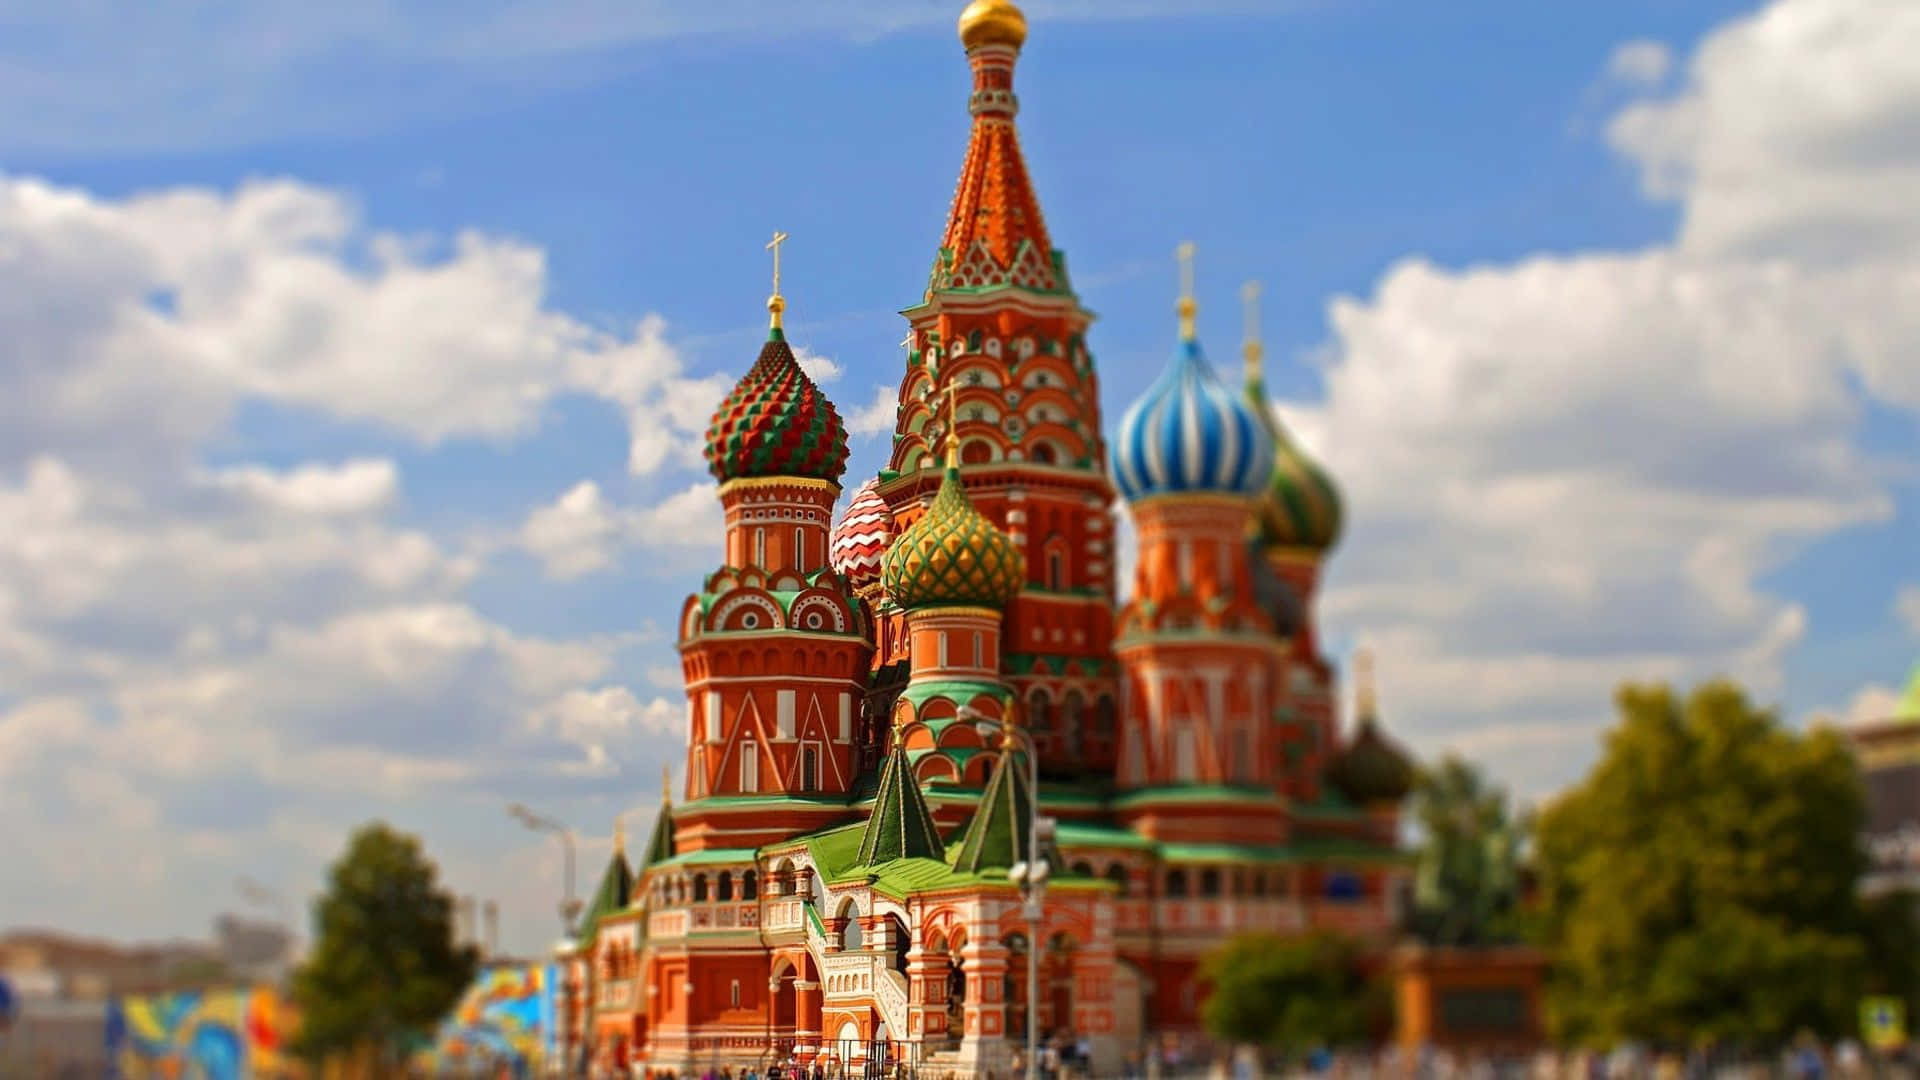 Paisagemda Praça Vermelha Do Kremlin De Moscou. Papel de Parede